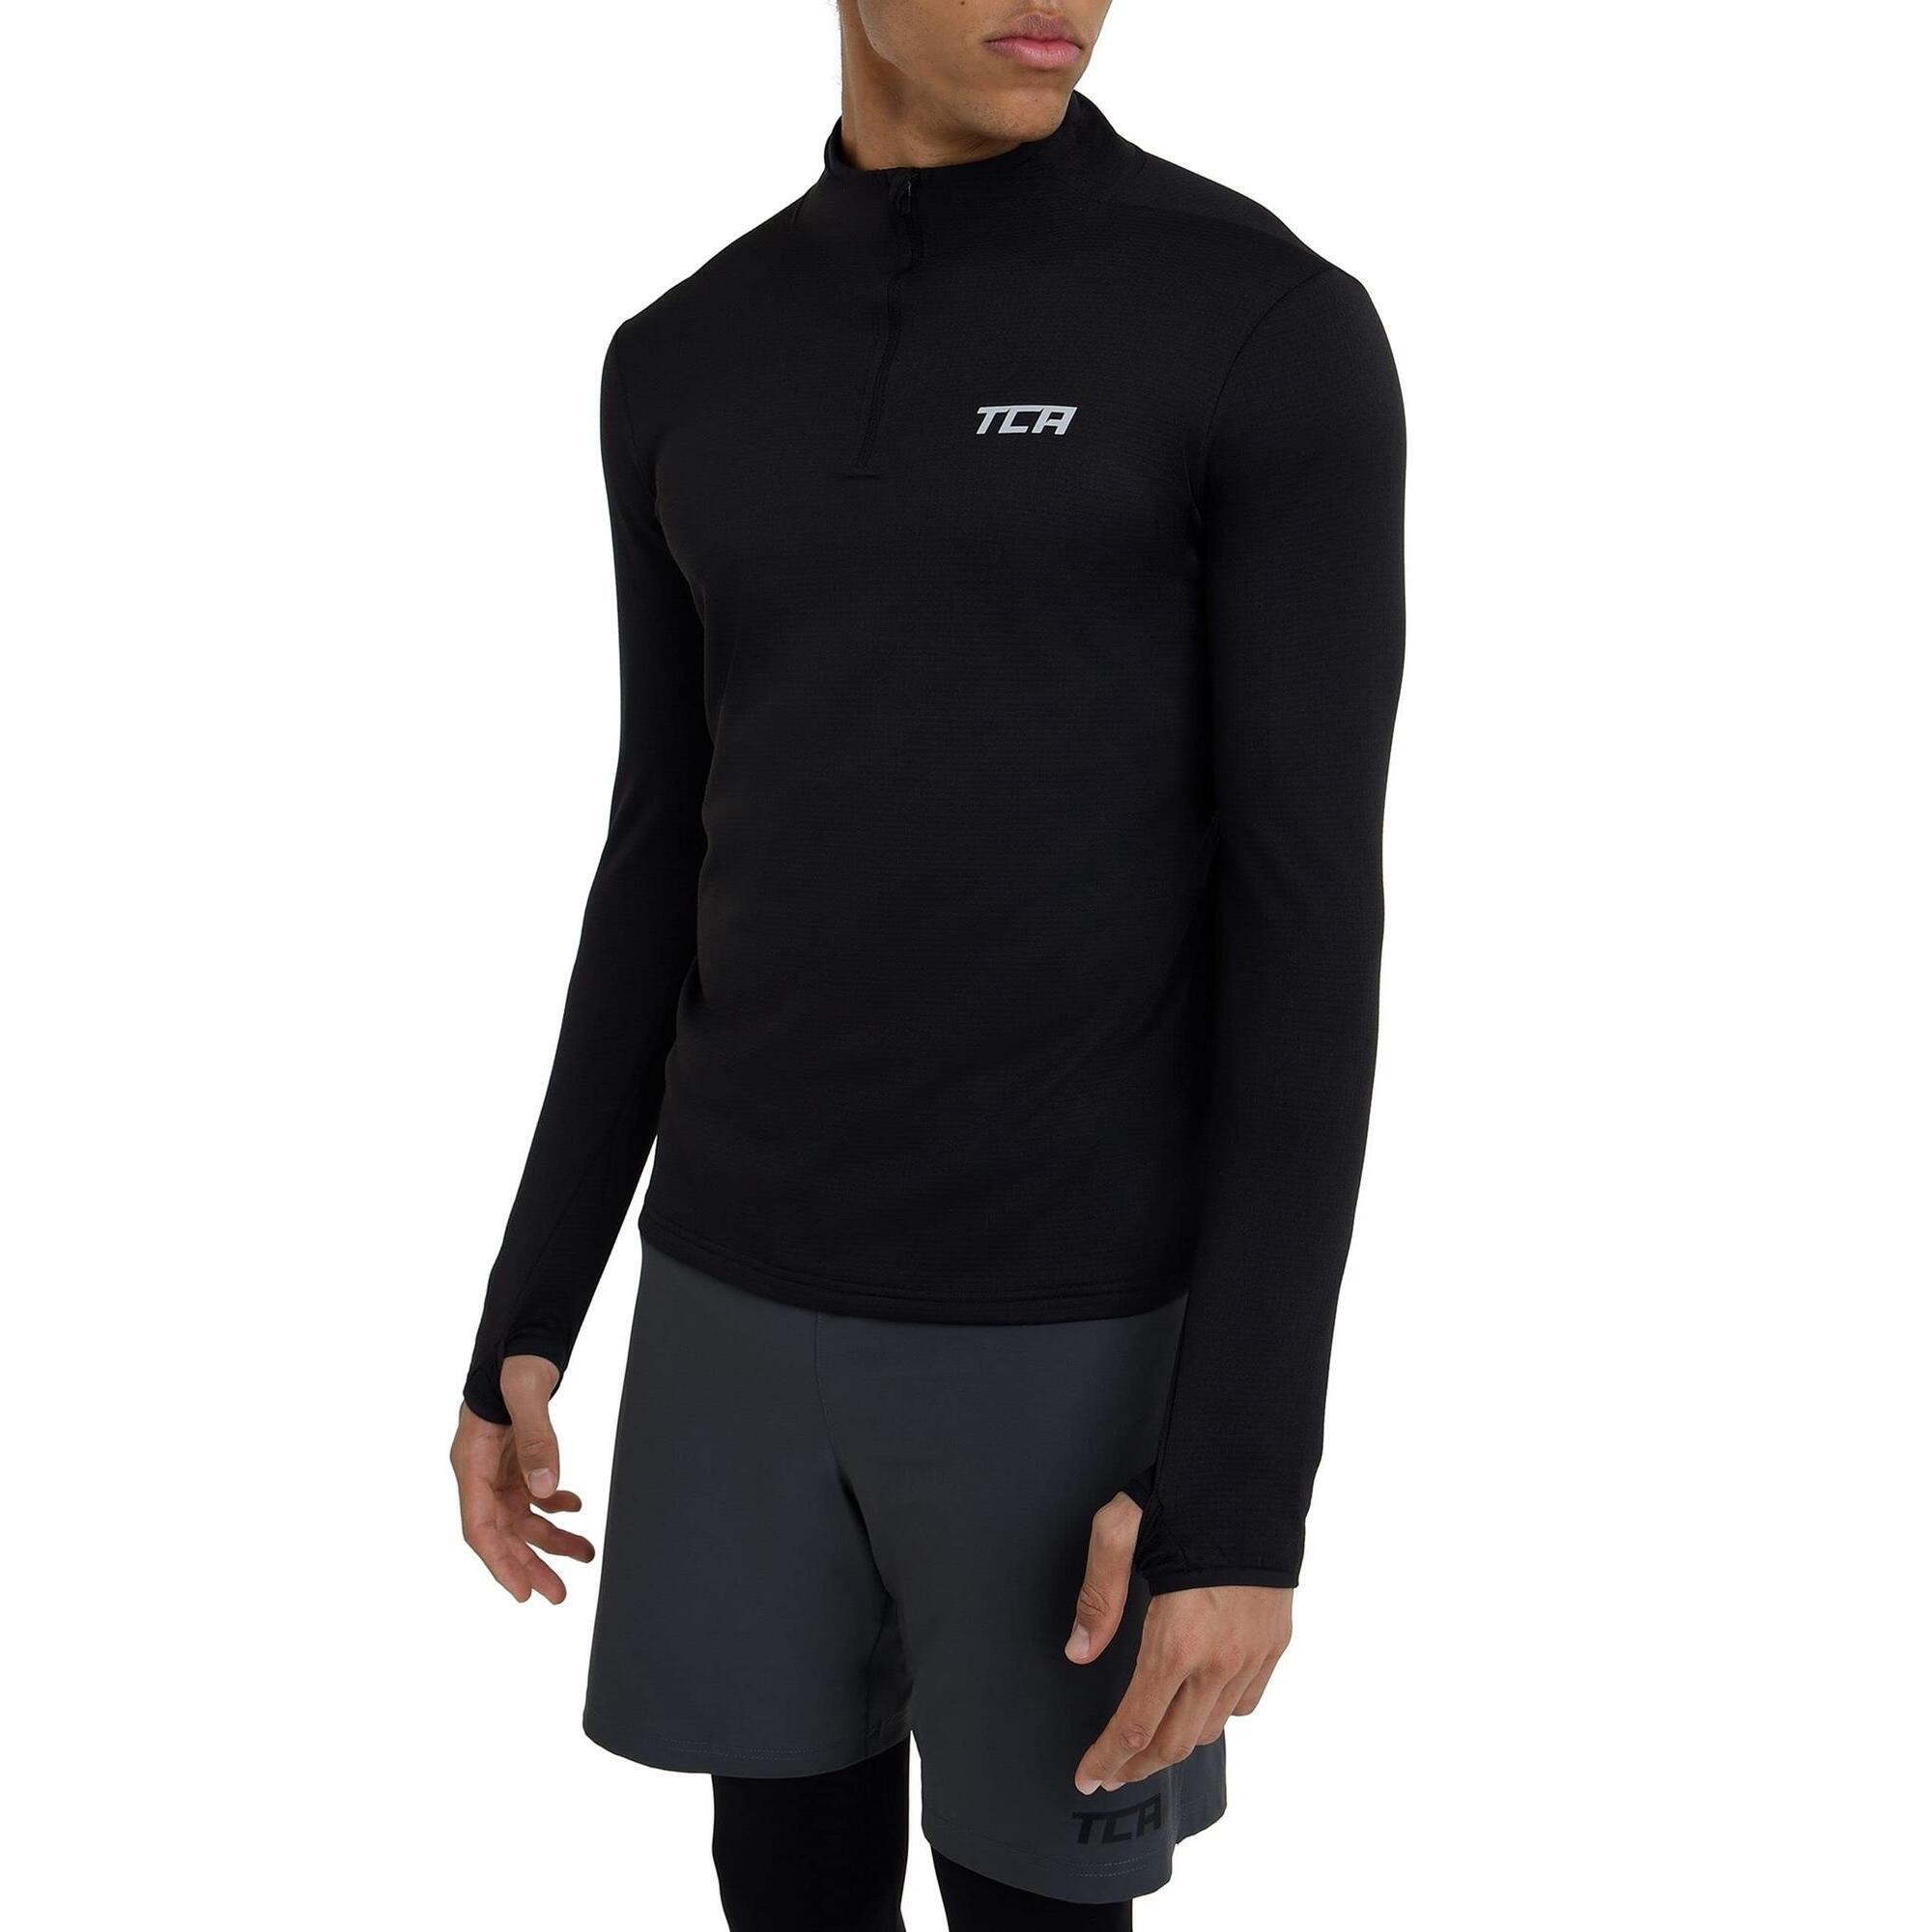 TCA Men's Cloud Fleece 1/4 Zip Top with Zip Pocket - Black